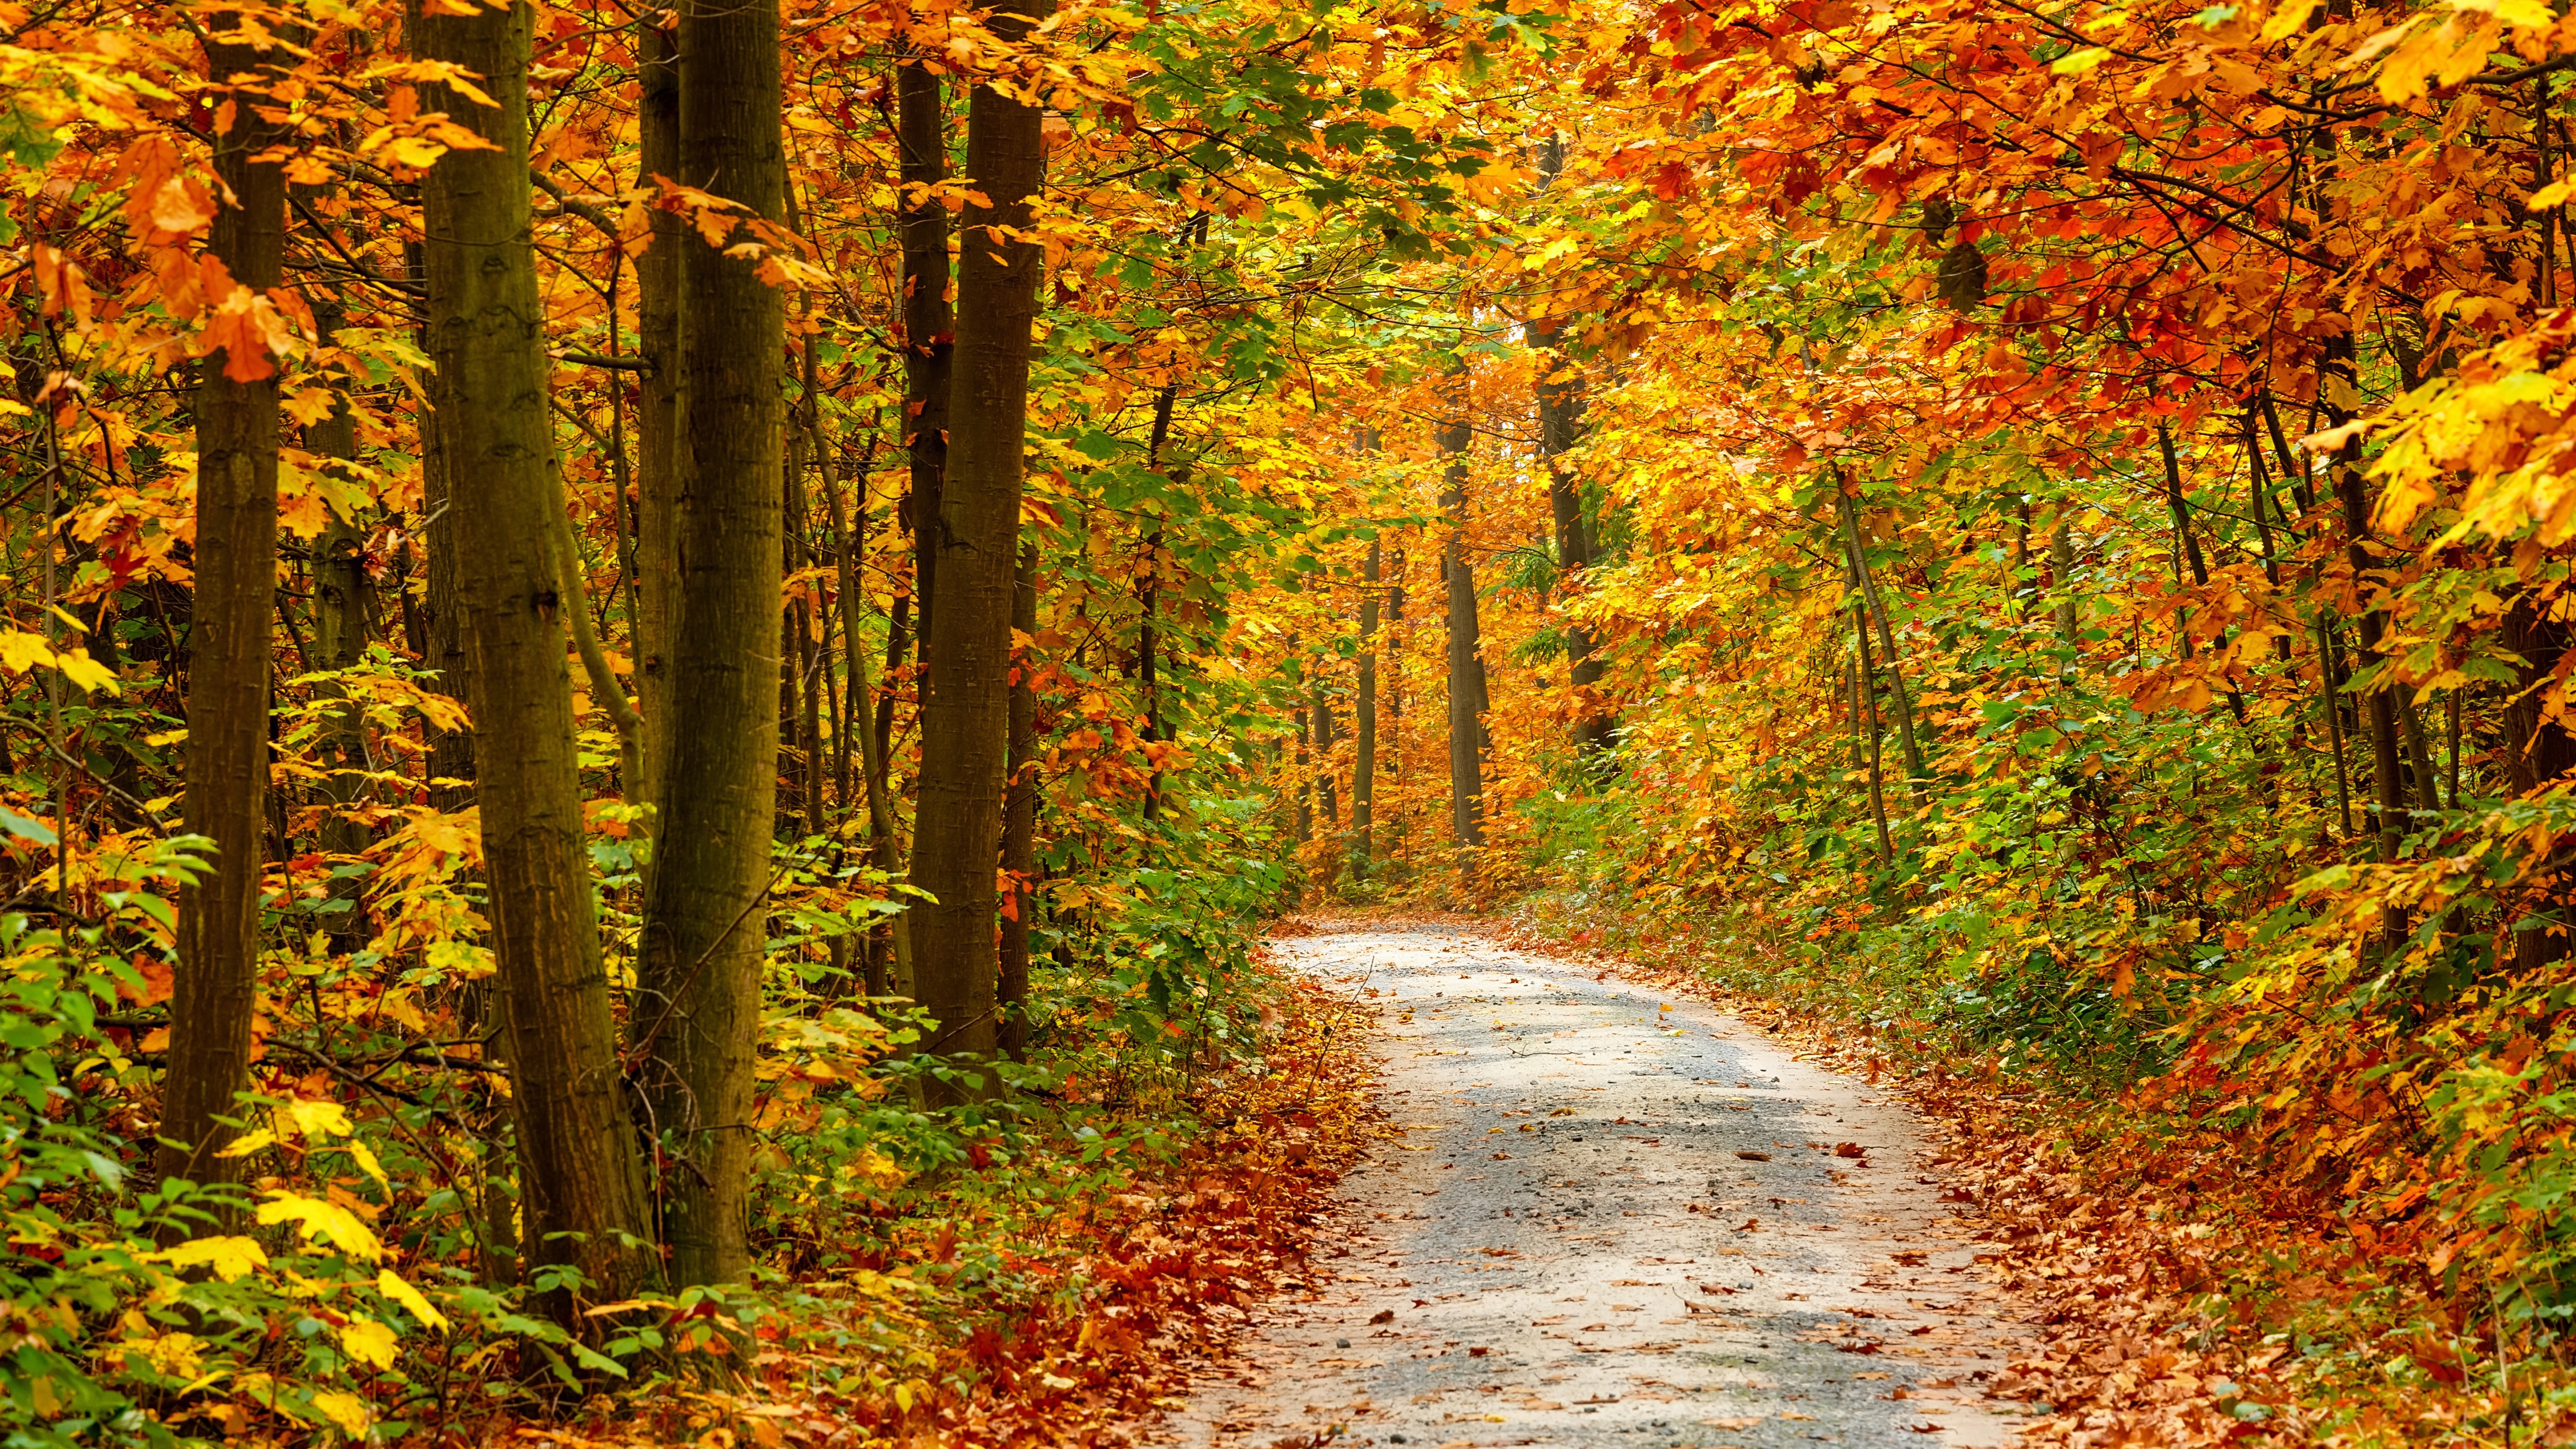 Картинка времена года осень. Осенний лес. Осень в лесу. Тропинка в осеннем лесу. Лес осенью.